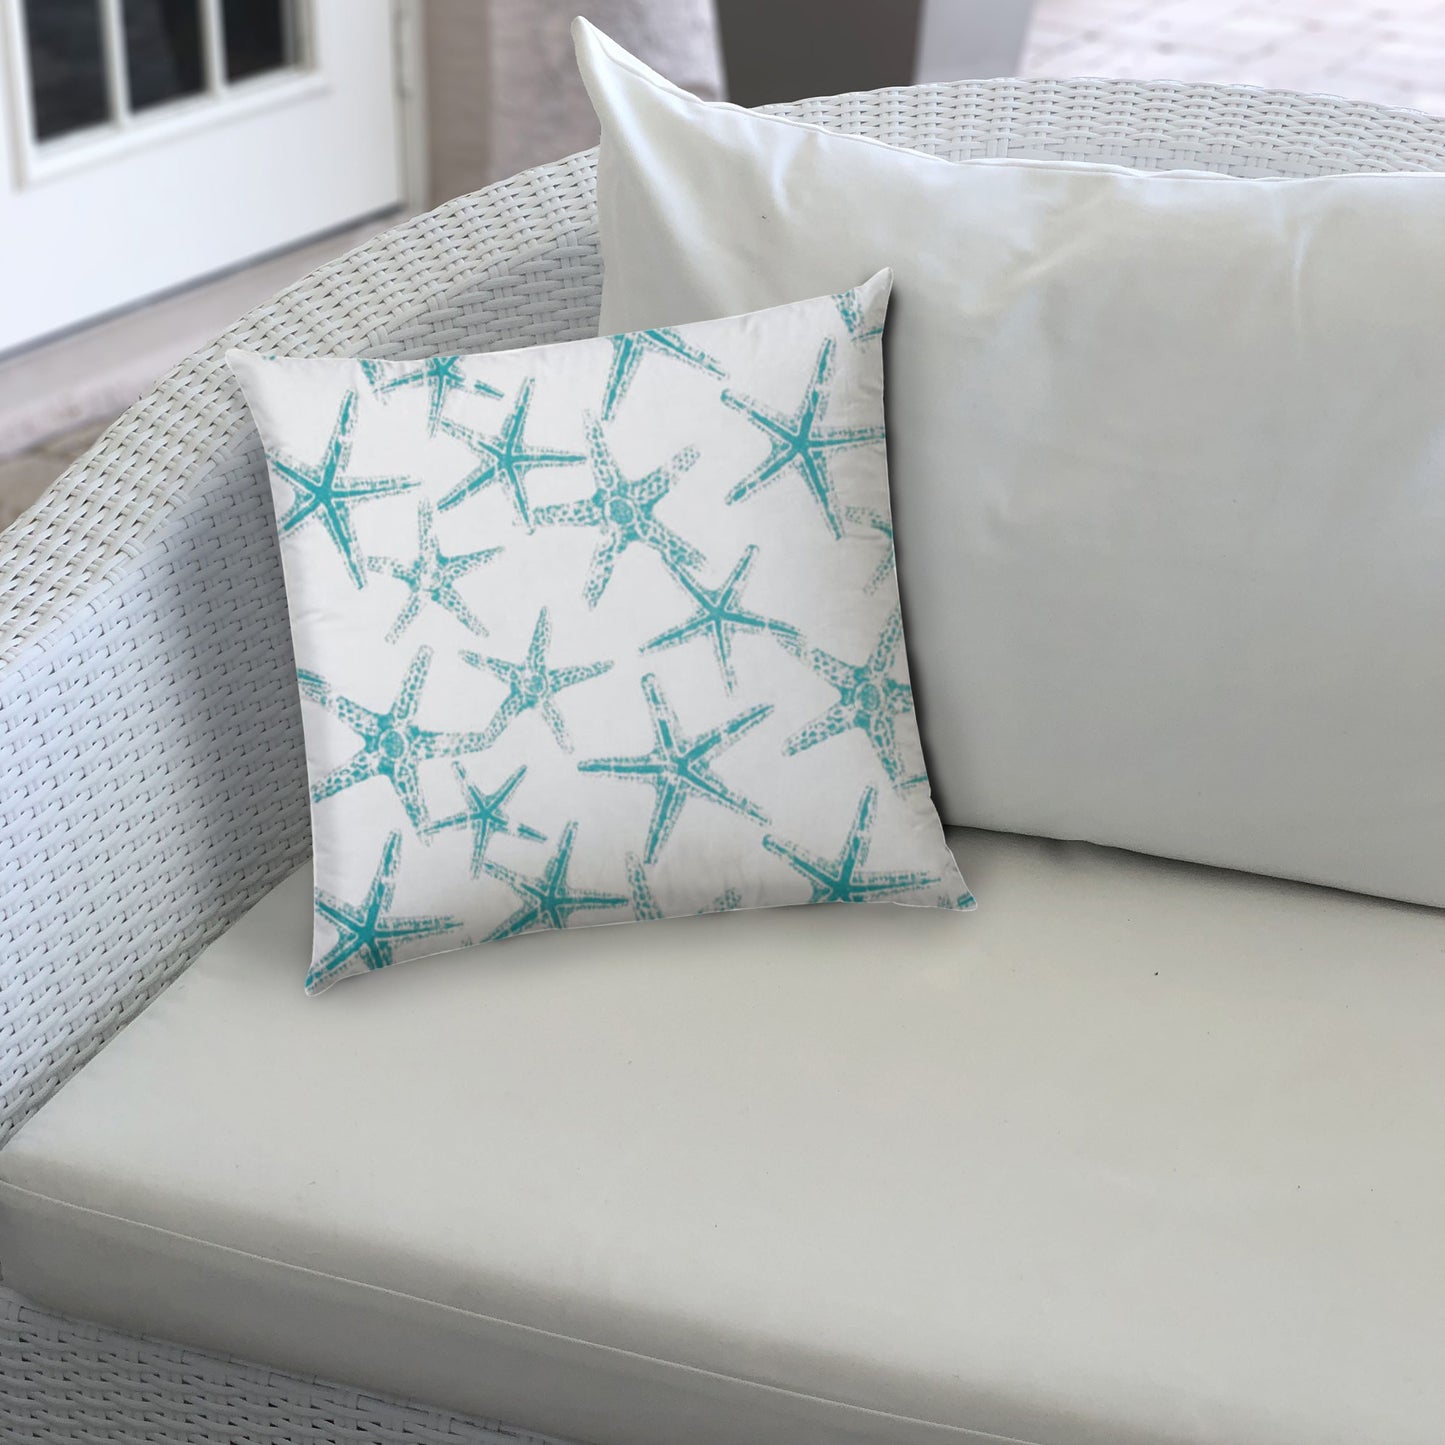 14" X 20" Turquoise And White Starfish Blown Seam Nautical Lumbar Indoor Outdoor Pillow